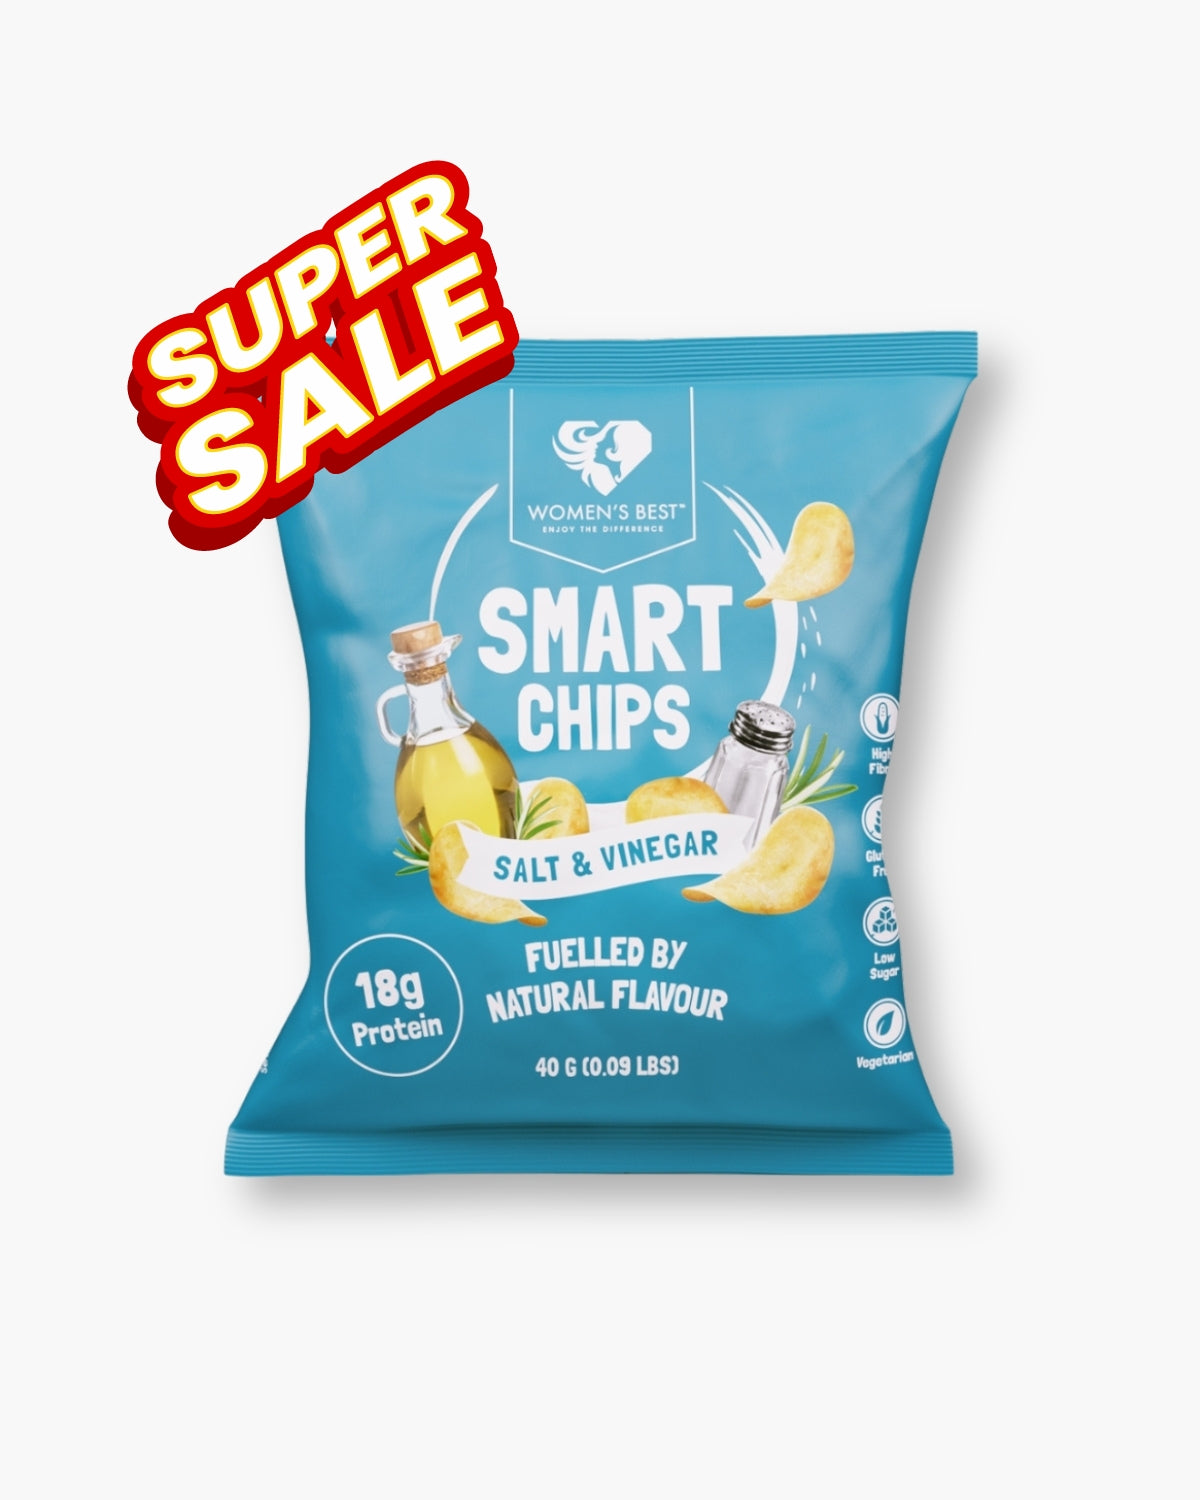 Smart Chips 40g, Salt & Vinegar, Women's Best